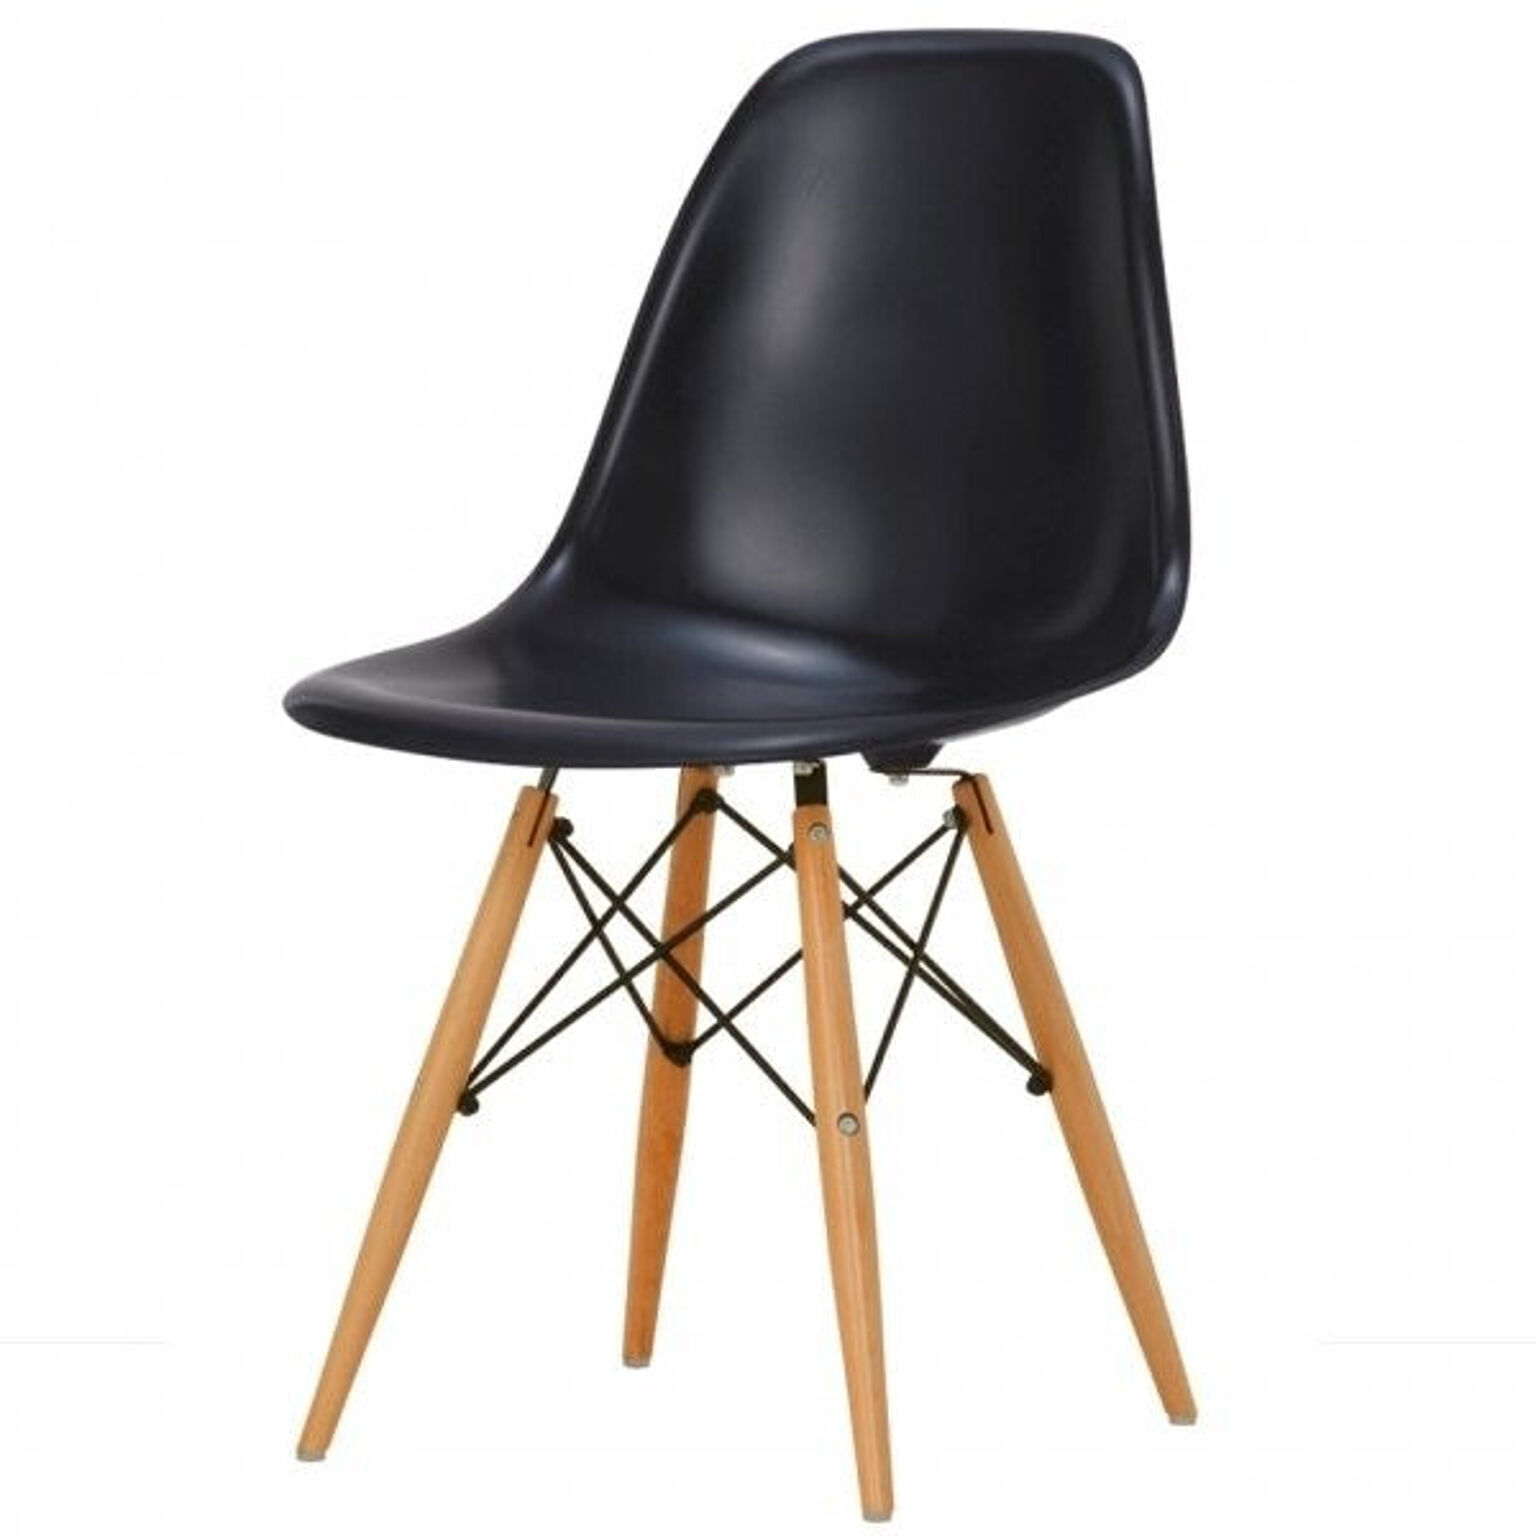 チェア 椅子 おしゃれ 北欧 デザイナーズ 家具 デザイン サイドシェルチェア つやなし仕様 【DSW】